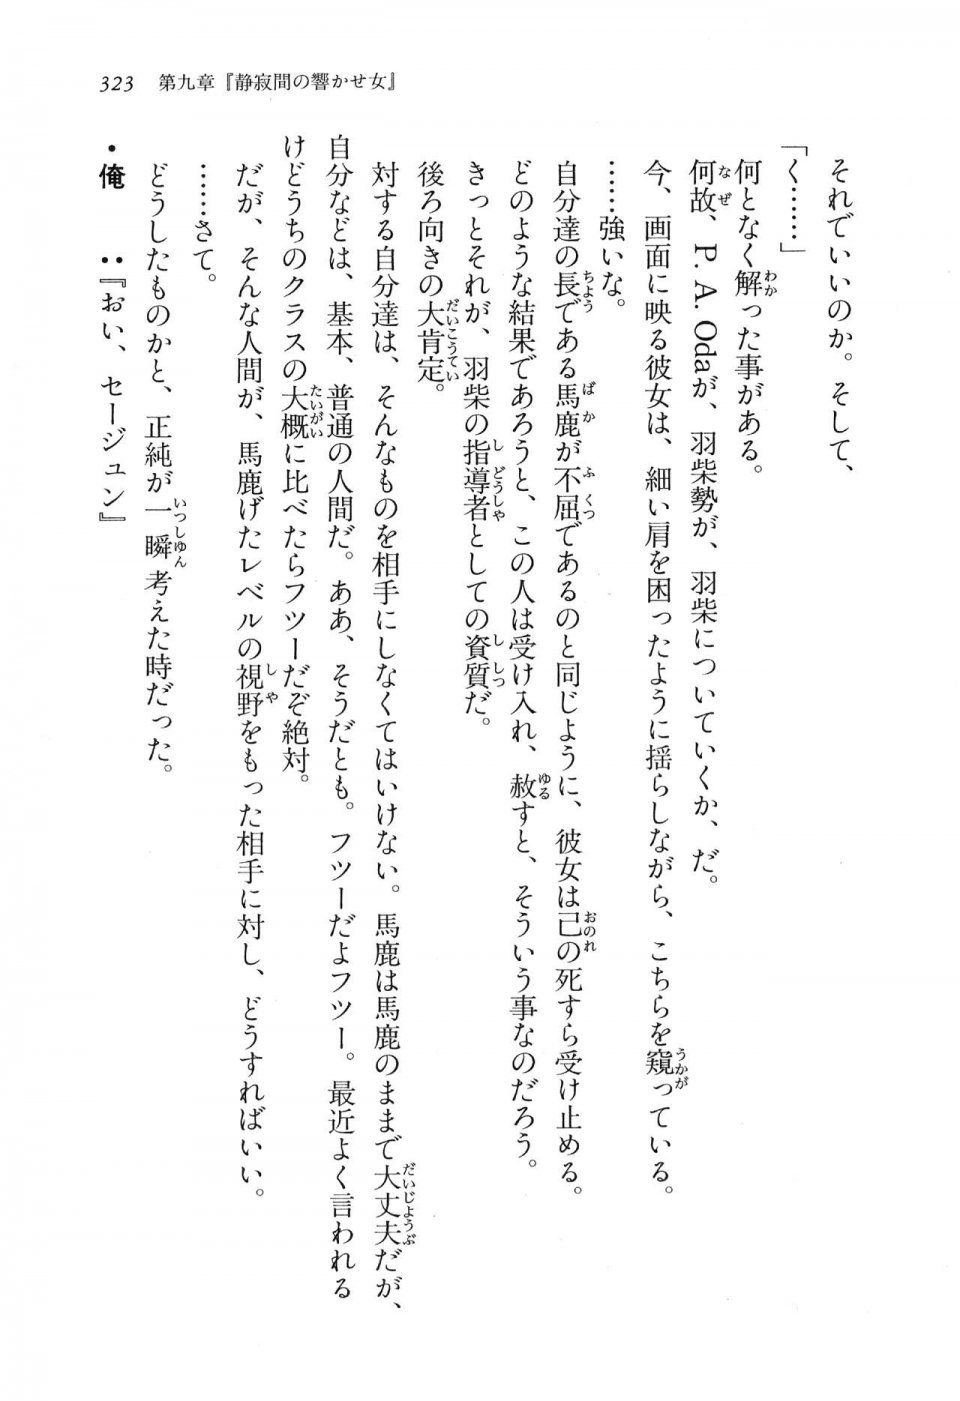 Kyoukai Senjou no Horizon LN Vol 16(7A) - Photo #323